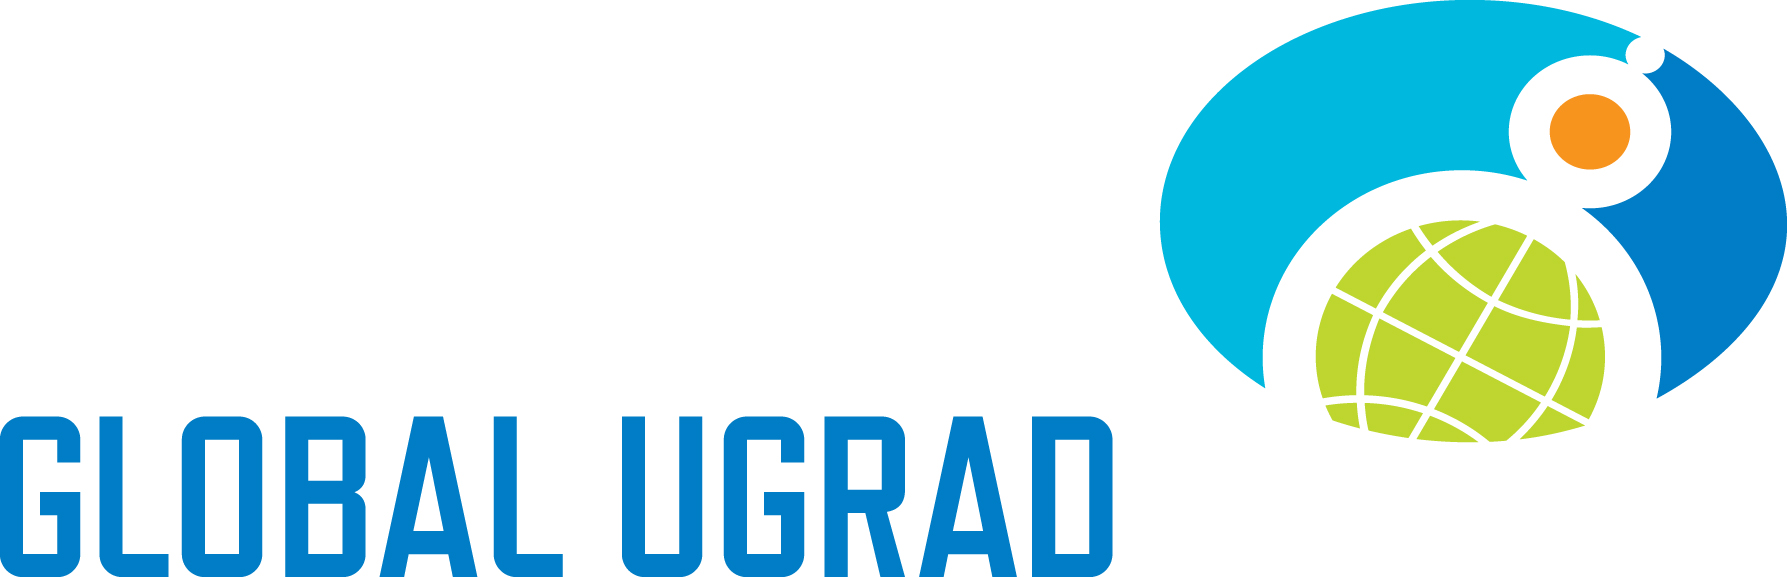 Chương trình học bổng Global UGRAD 2016 dành cho sinh viên Đại học